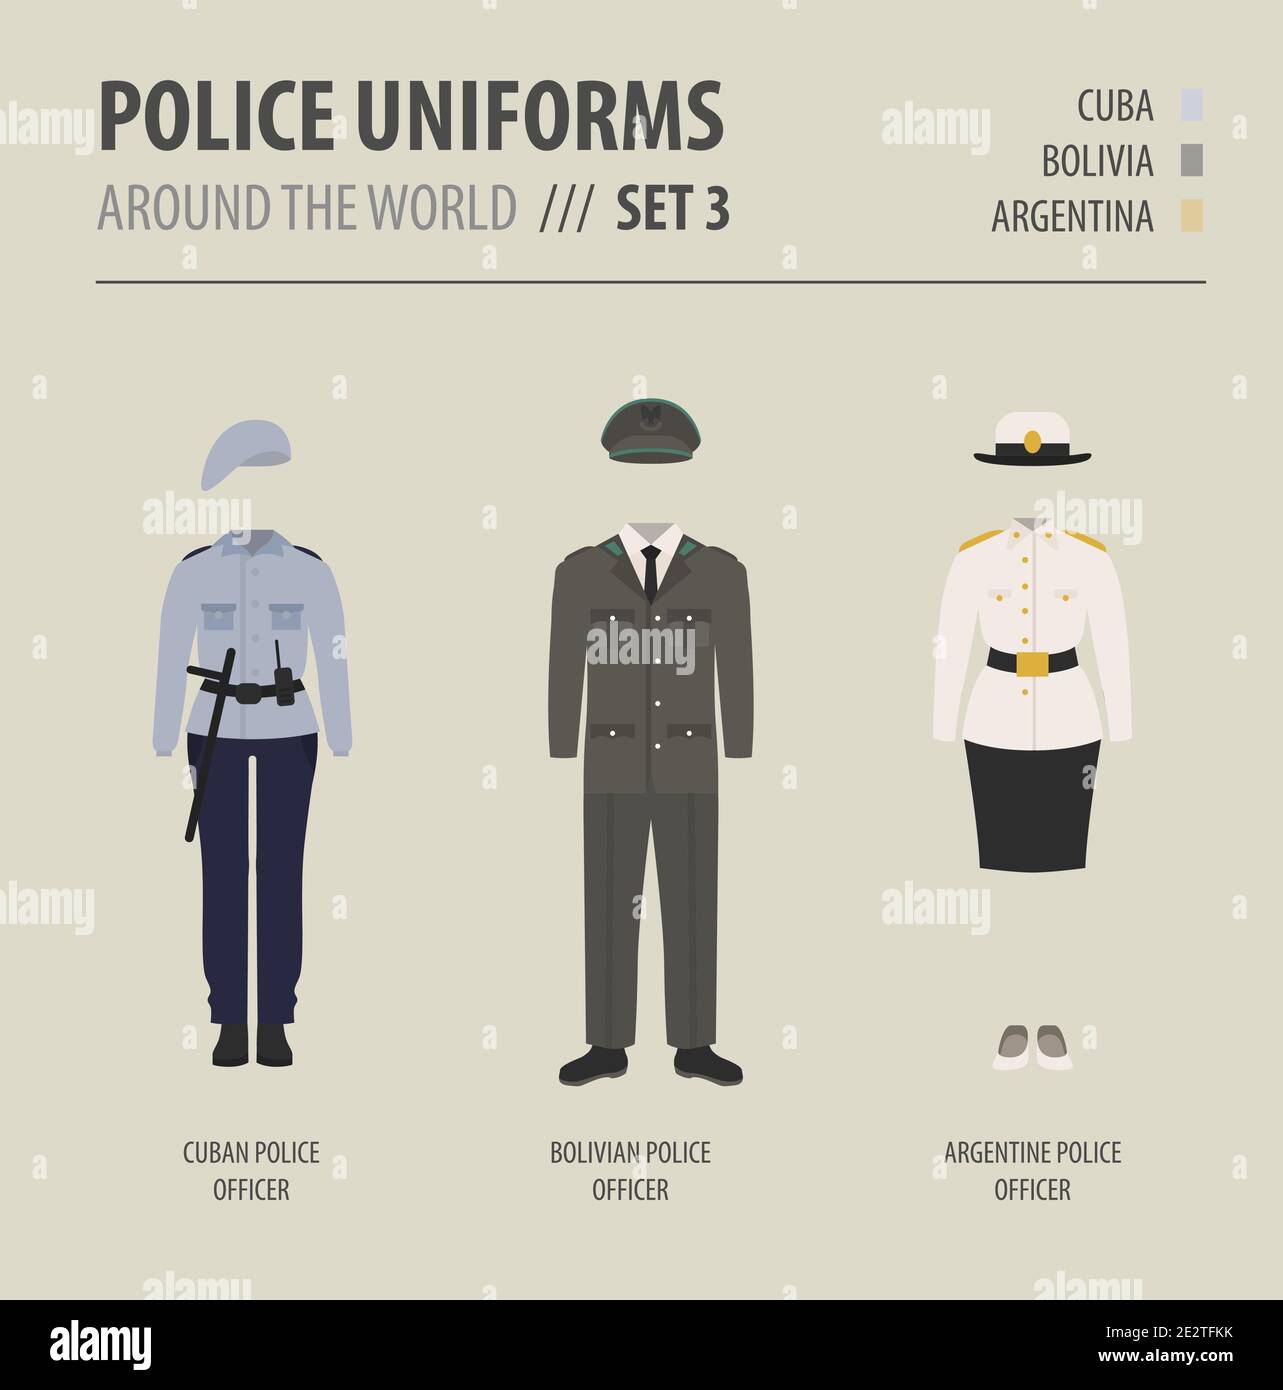 Polizei Uniformen auf der ganzen Welt. Anzug, Kleidung der amerikanischen Polizeibeamten Vektor-Illustrationen-Set Stock Vektor